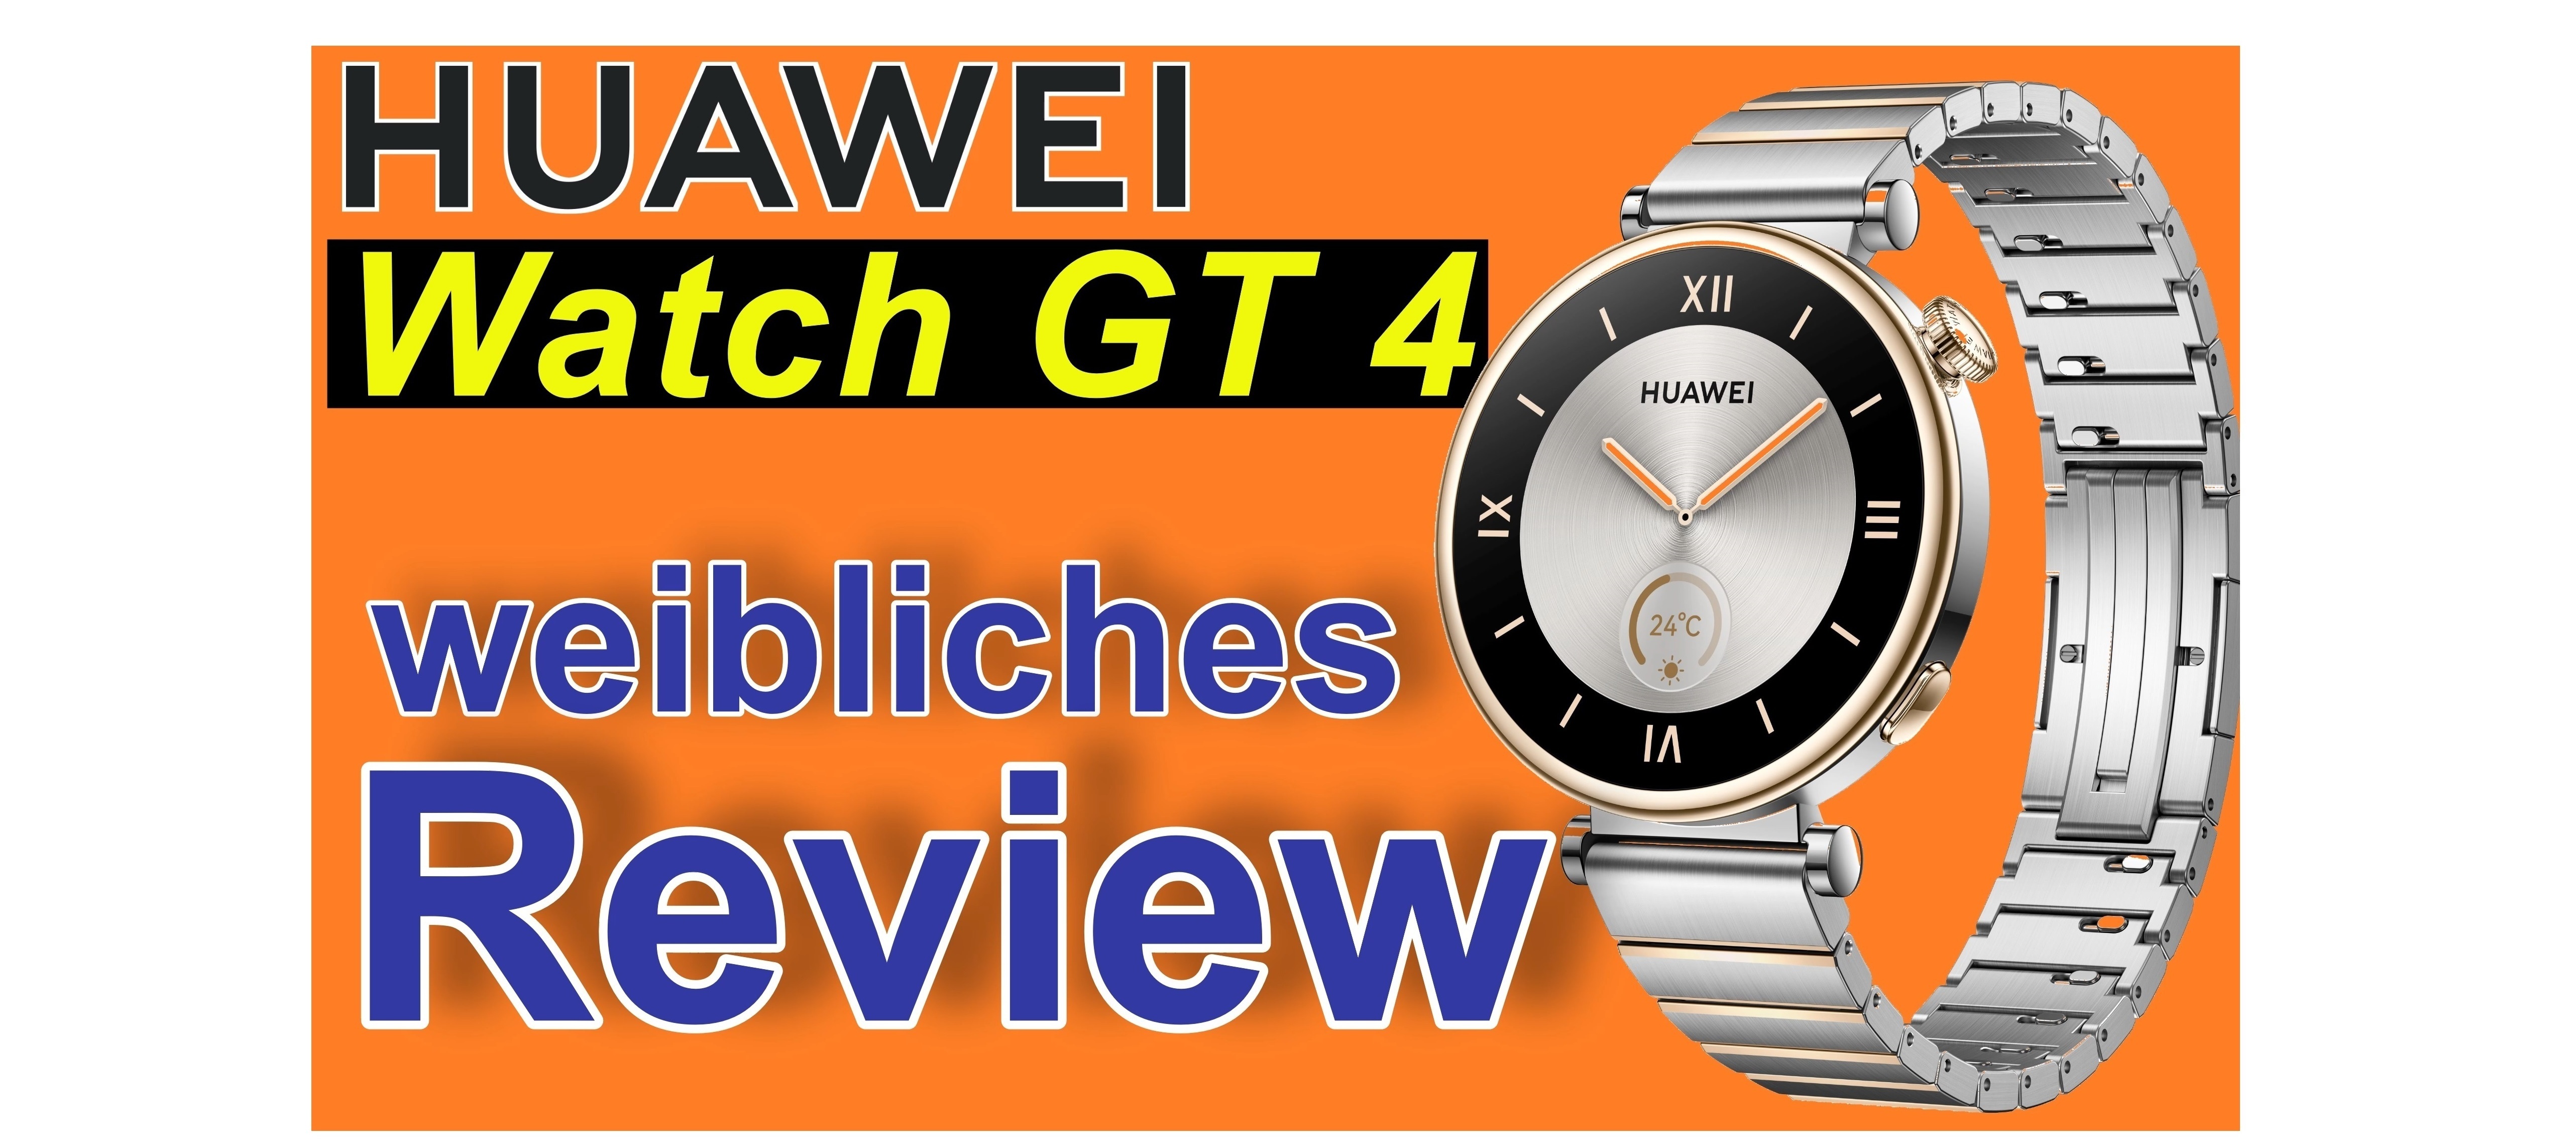 Huawei Watch GT 4 - Bericht aus Sicht einer Testerin | SeppelPower